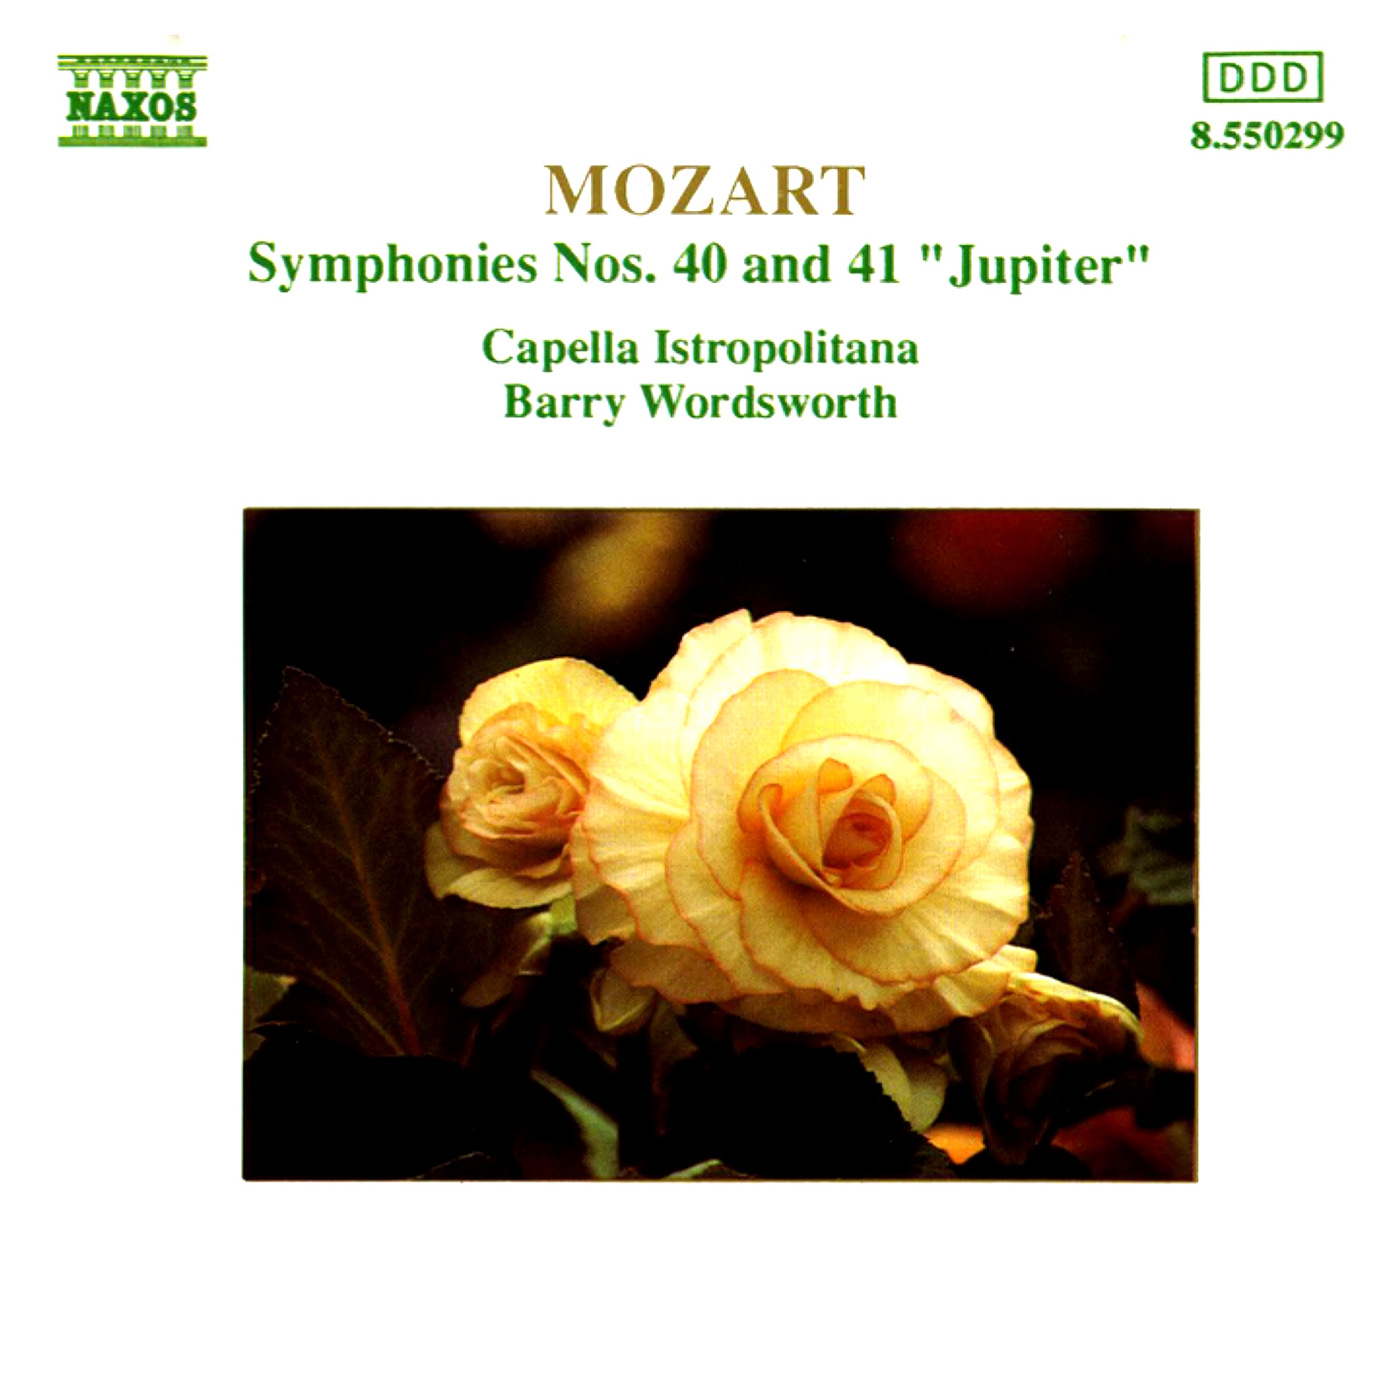 Symphony No. 41 in C Major, K. 551, "Jupiter": III. Menuetto: Allegretto